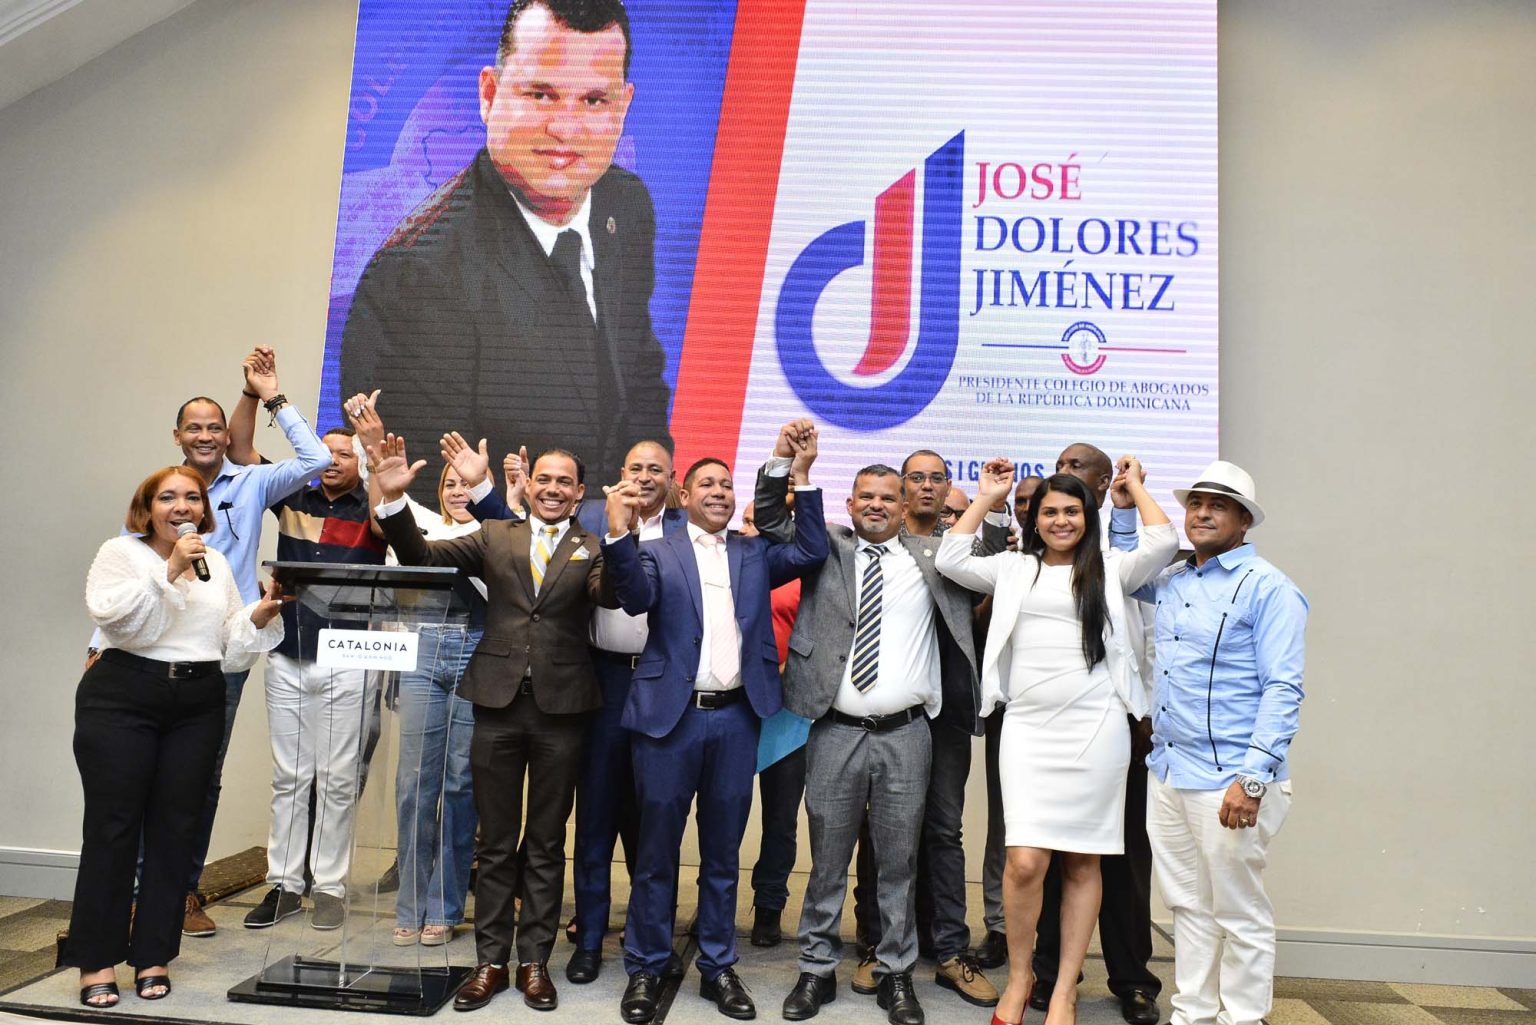 Jose Dolores Jimenez lanza en Santo Domingo candidatura a la presidencia del CARD